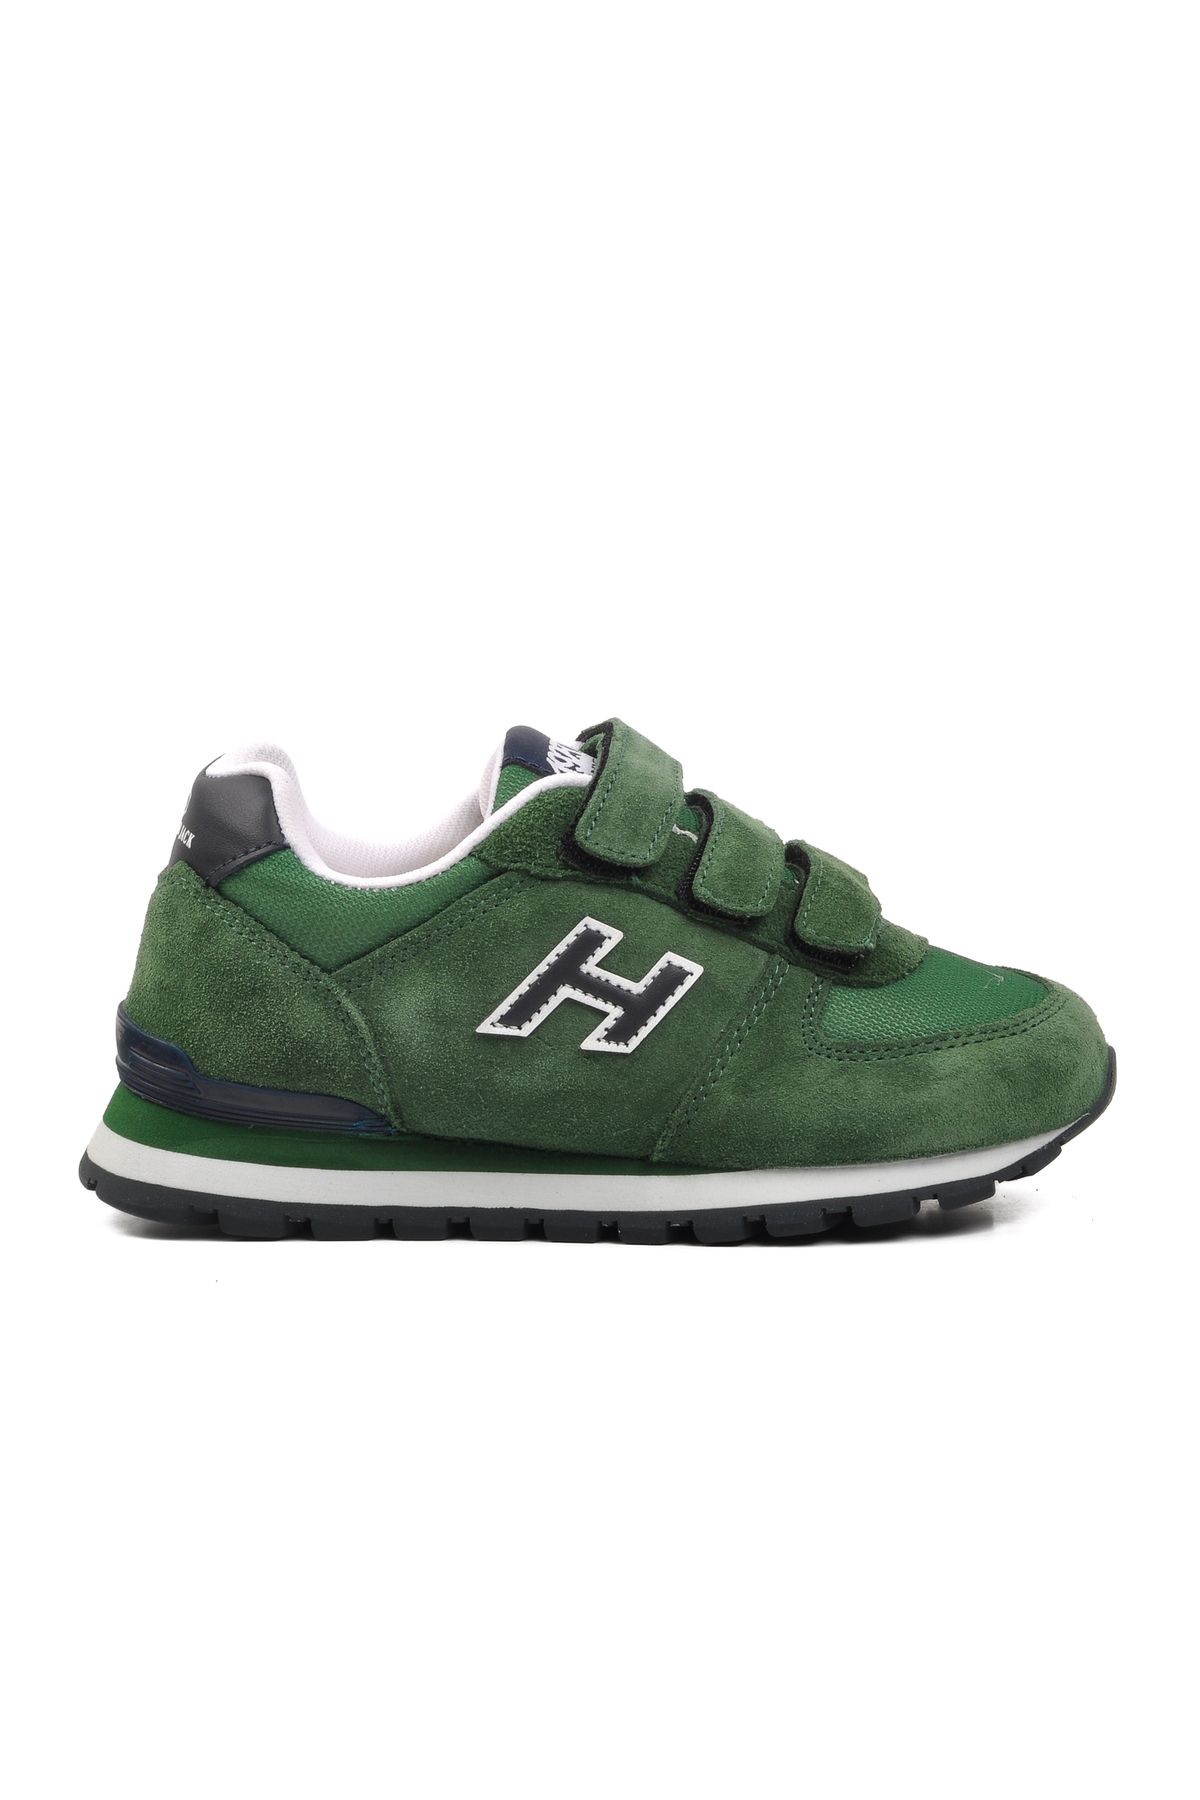 Hammer Jack Peru 102 19250-f Yeşil-lacivert Çocuk Sneaker